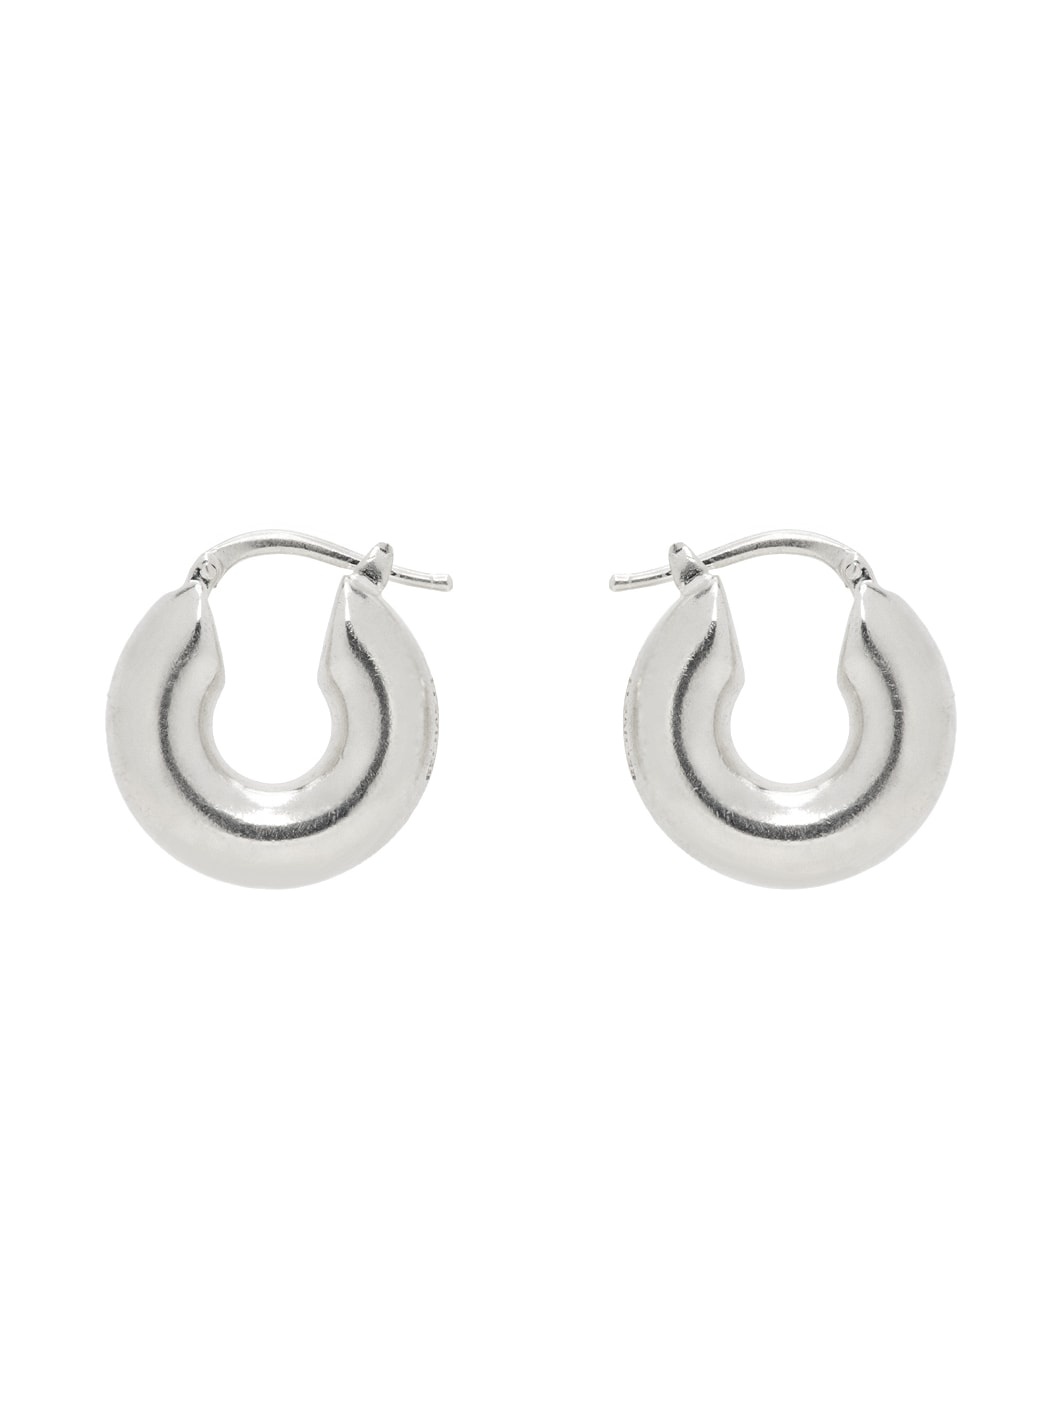 Silver Chunky Hoop Earrings - 1